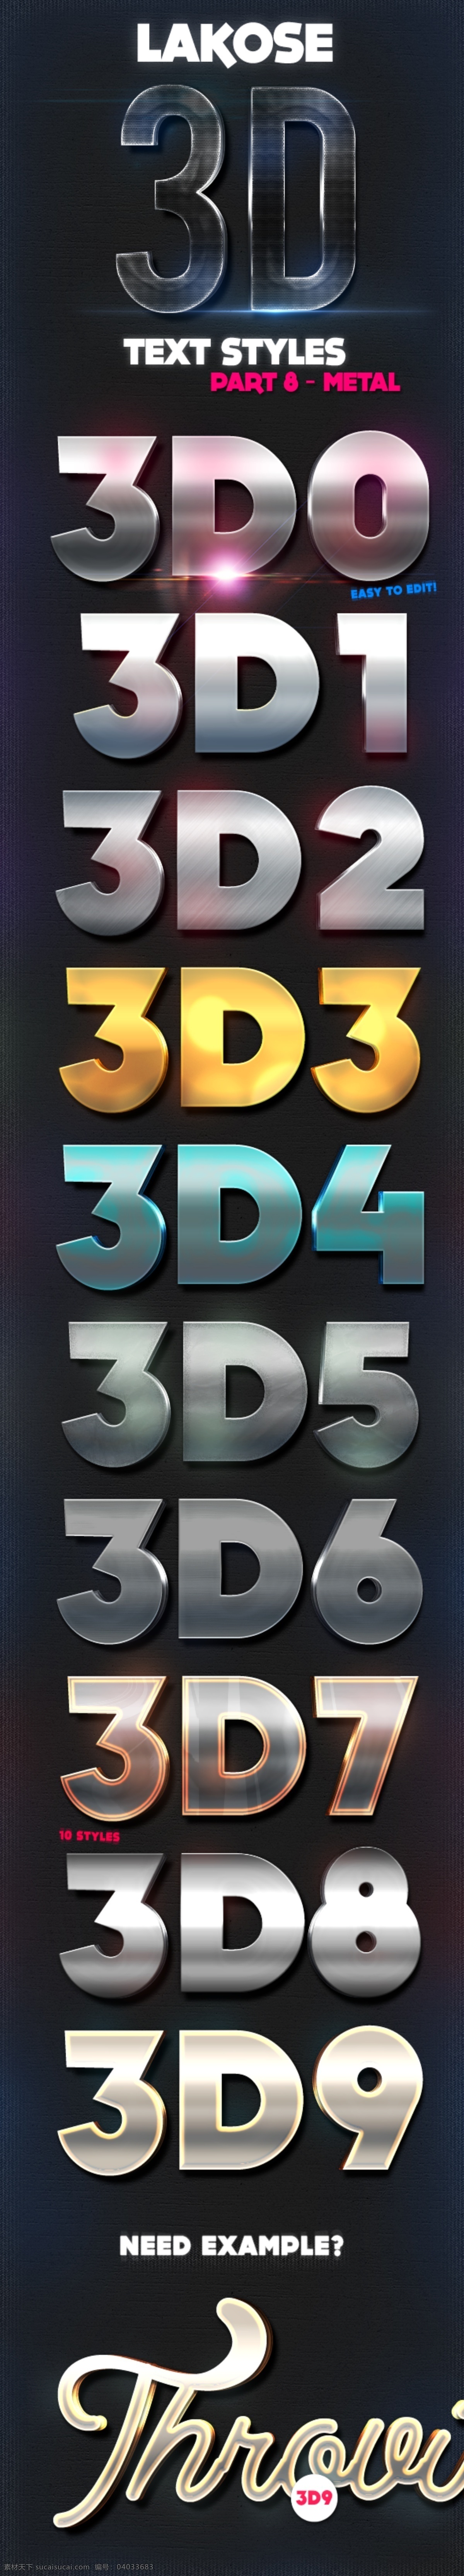 3d字效果 3d字 立体字 金属字 可编辑立体字 可编辑3d字 金属质感 3d效果字 字体样式 字 矢量 创意设计 分层